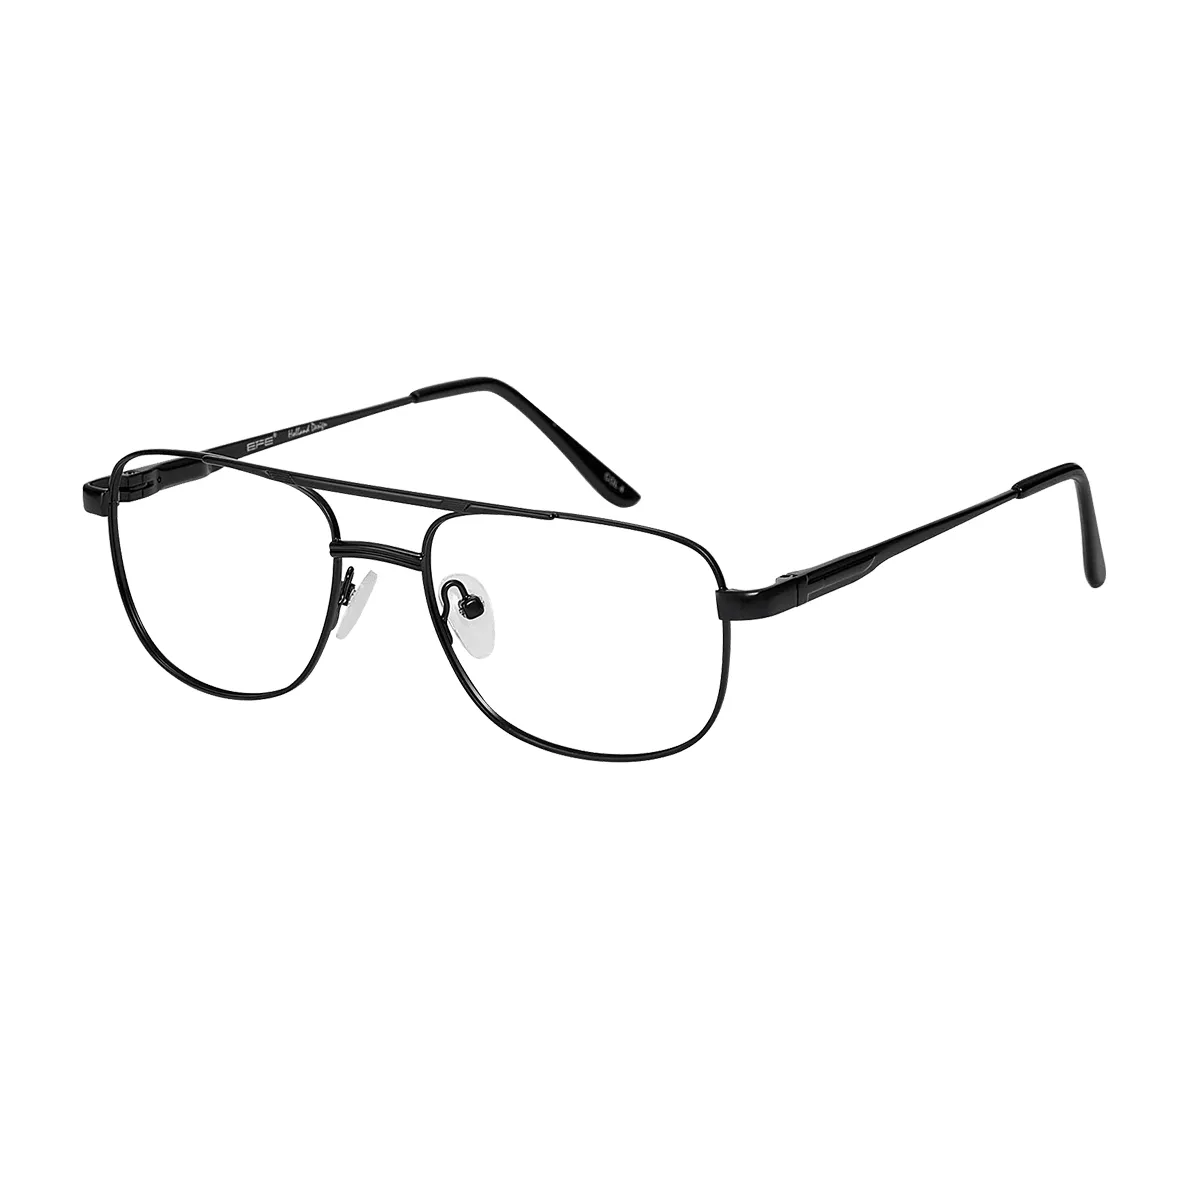 Manuel - Aviator Black Glasses for Men